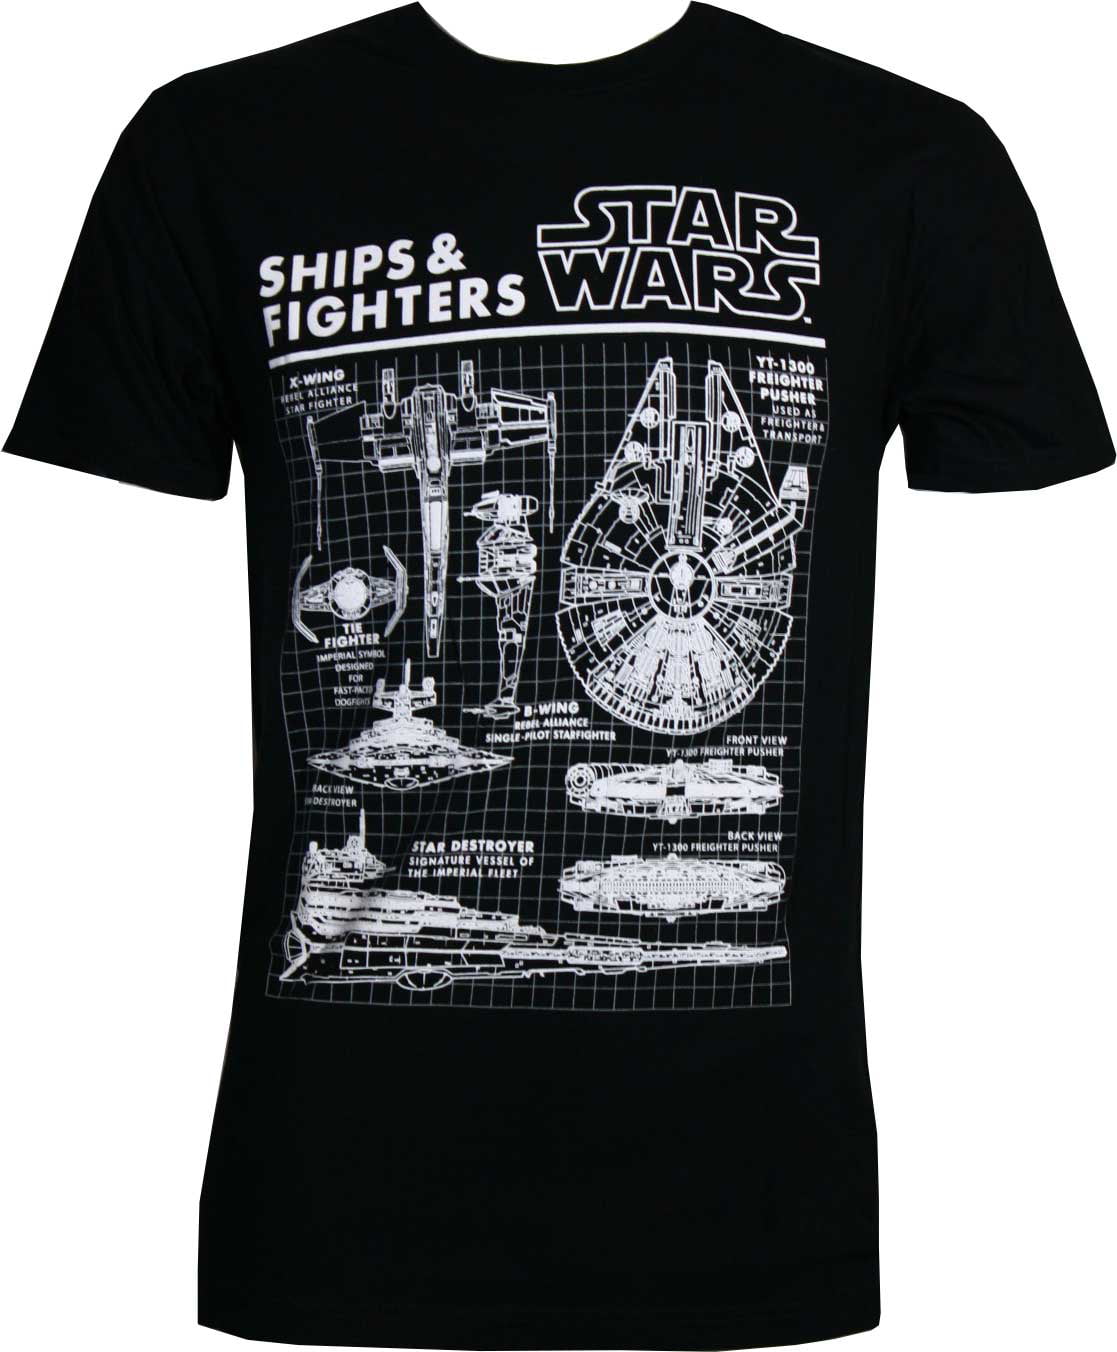 Ik heb het erkend Geplooid Abstractie Star Wars Ships & Fighters Men's Black Shirt, Medium - Walmart.com